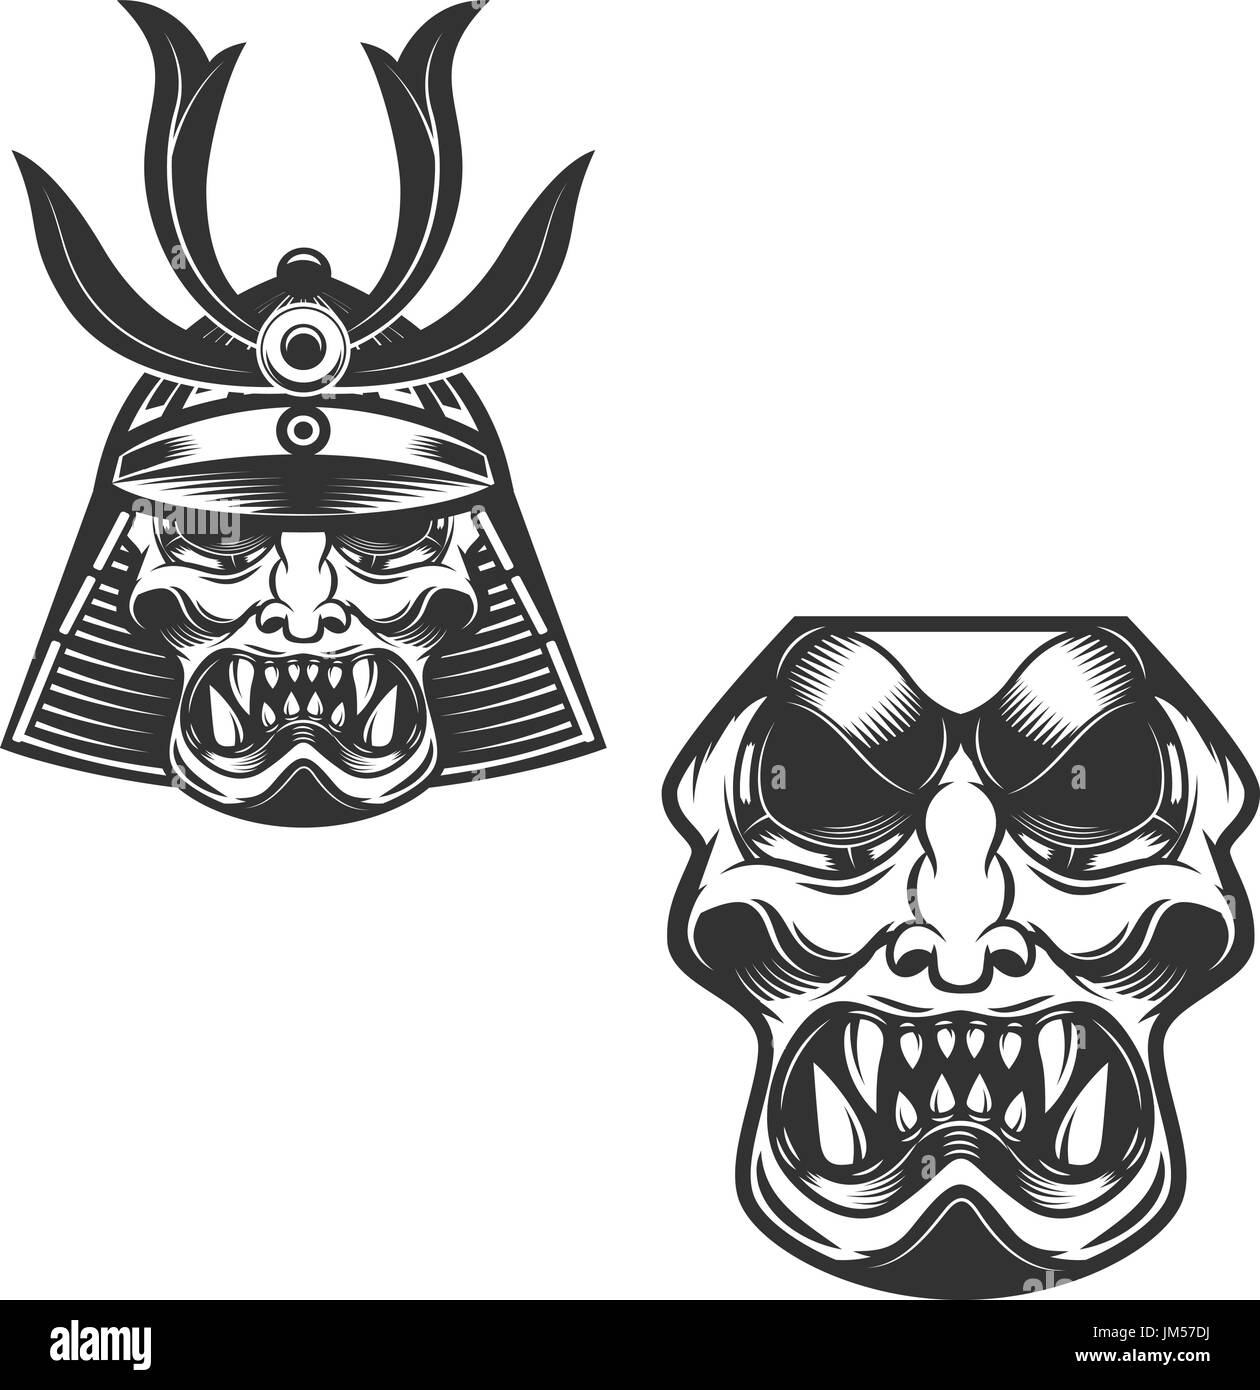 Samurai warrior helmet isolated on white background. Design elements for logo, label, emblem. Vector illustration. Stock Vector